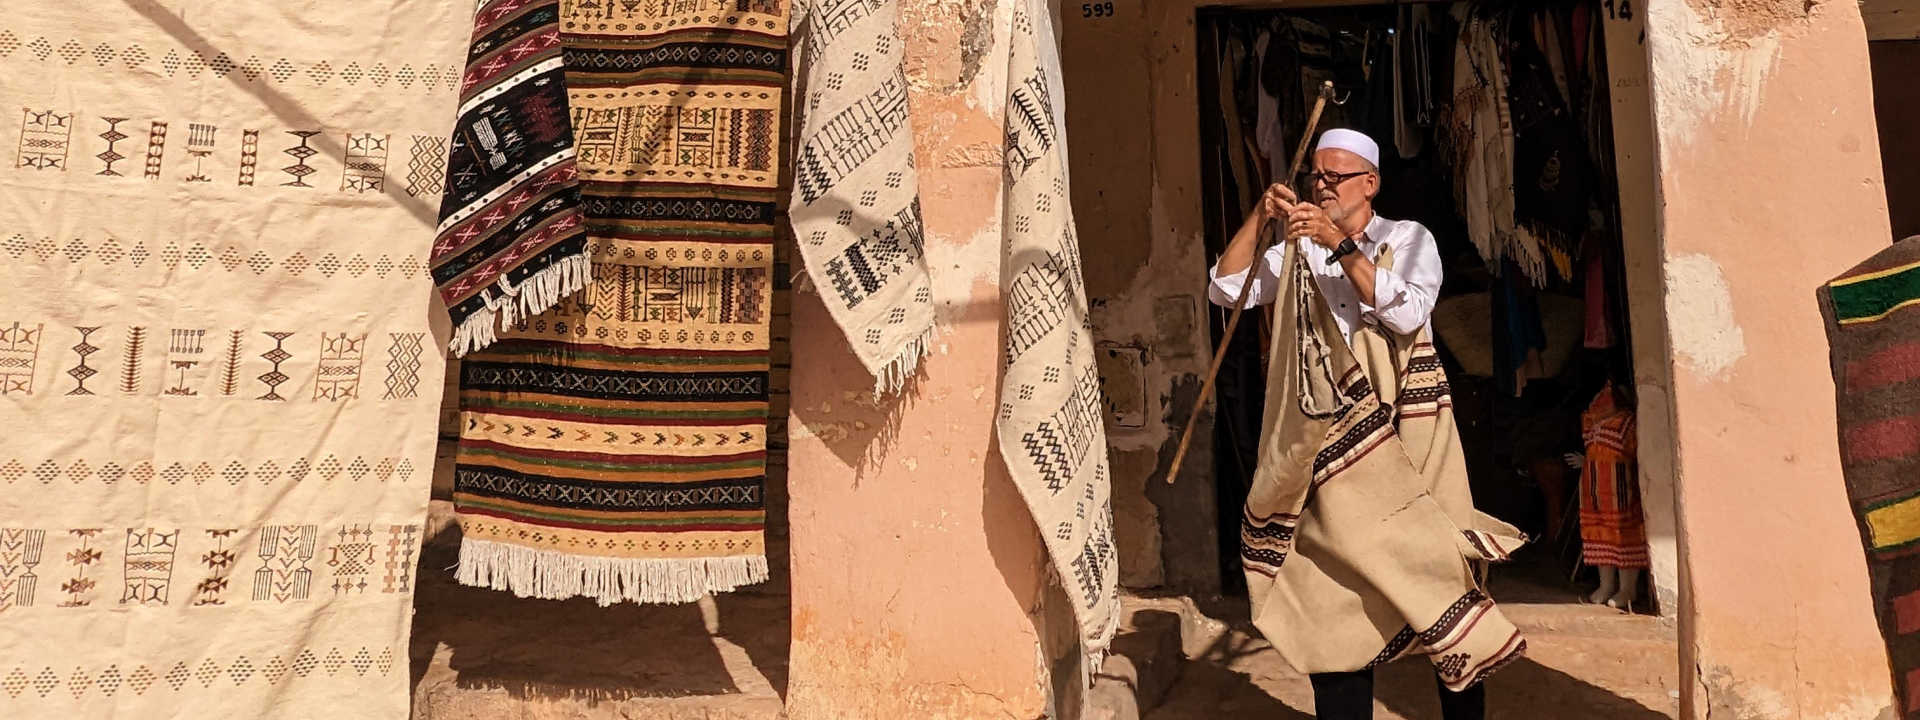 Algeria travel guide - Carpet seller Ghardaia